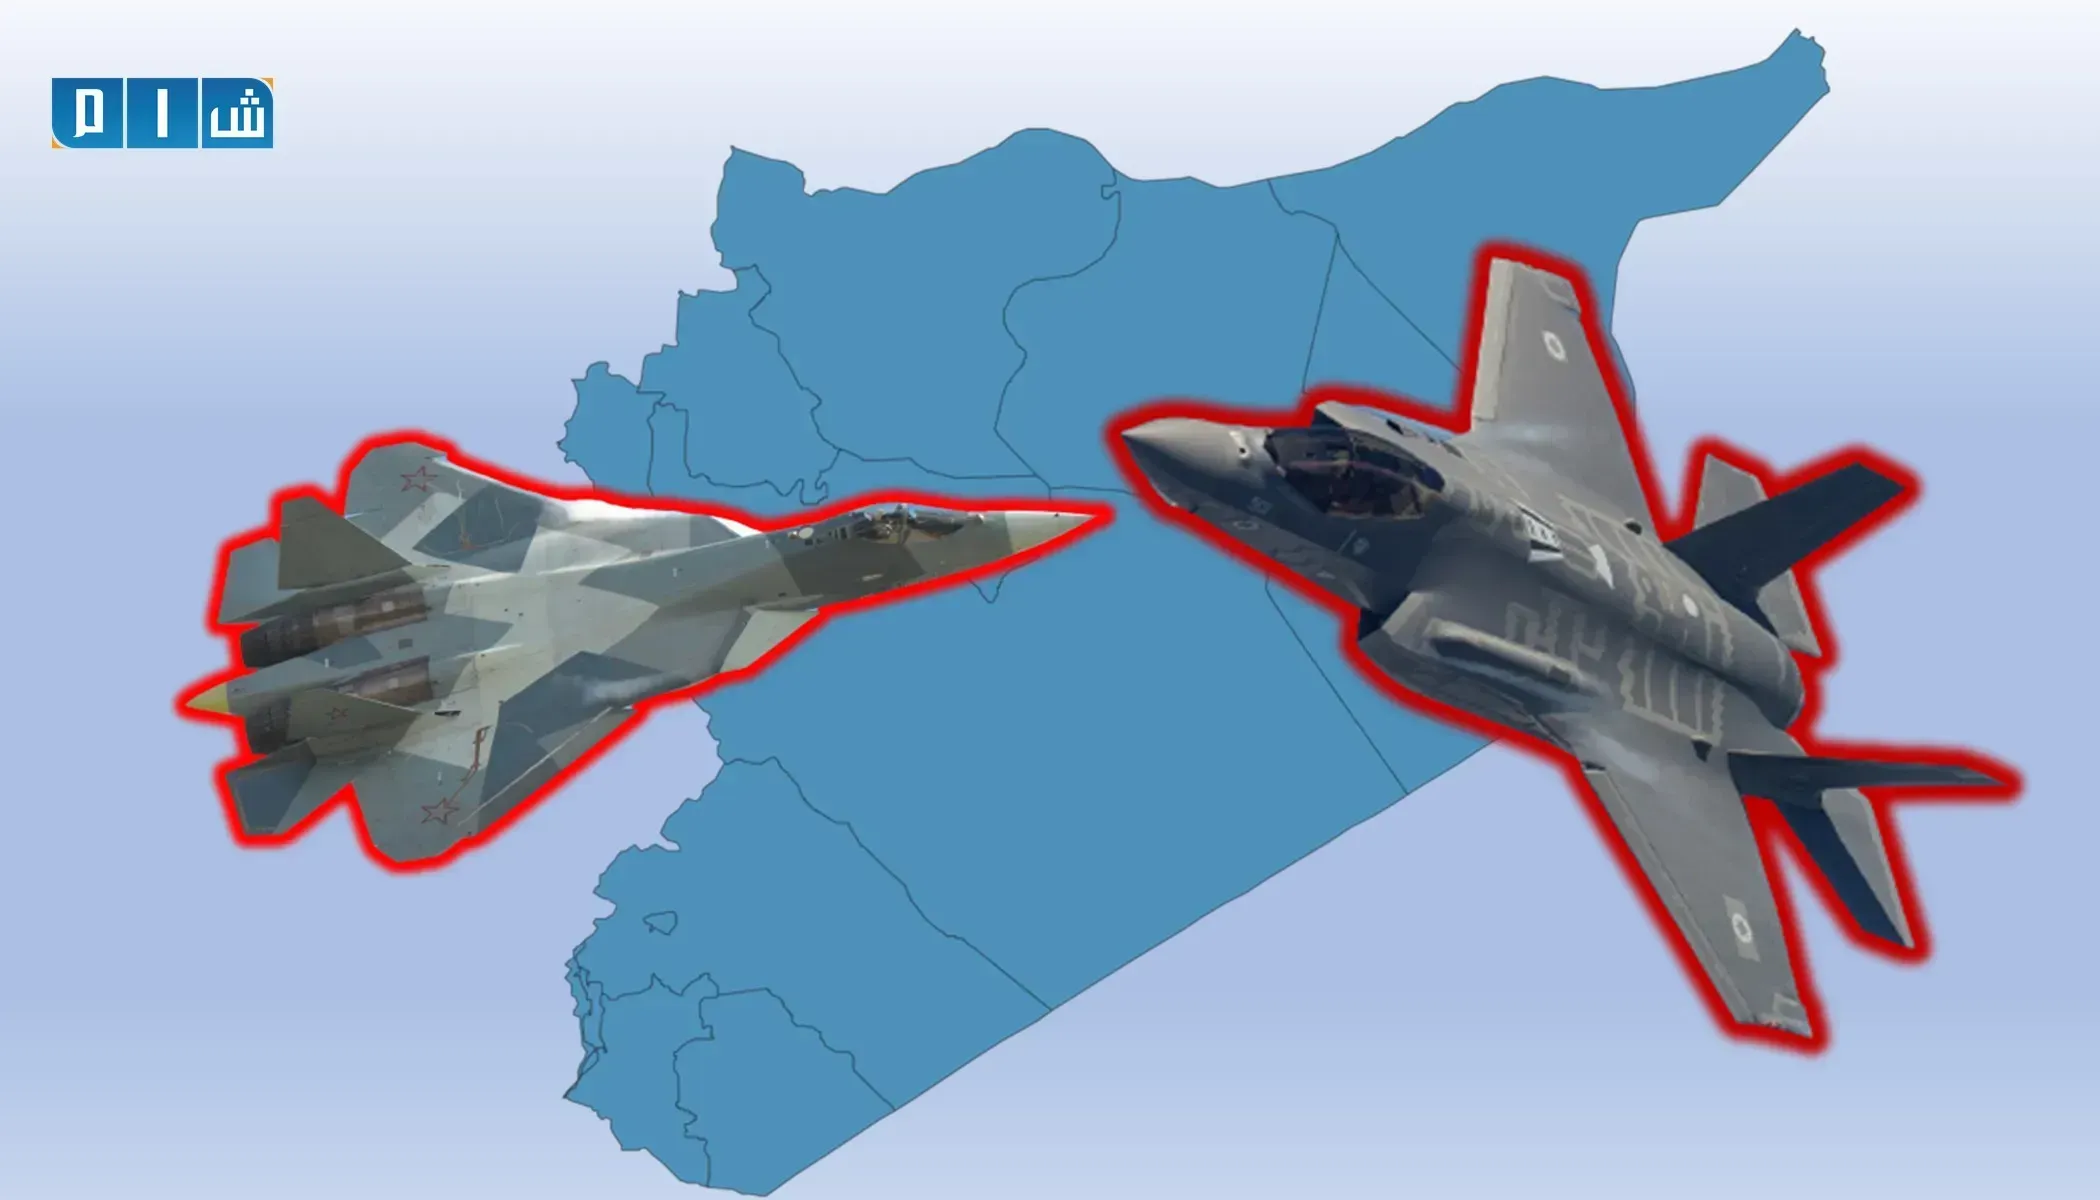 "المصالحة الروسي" يُسجل 12 انتهاك لطيران التحالف الدولي في سوريا خلال يوم واحد